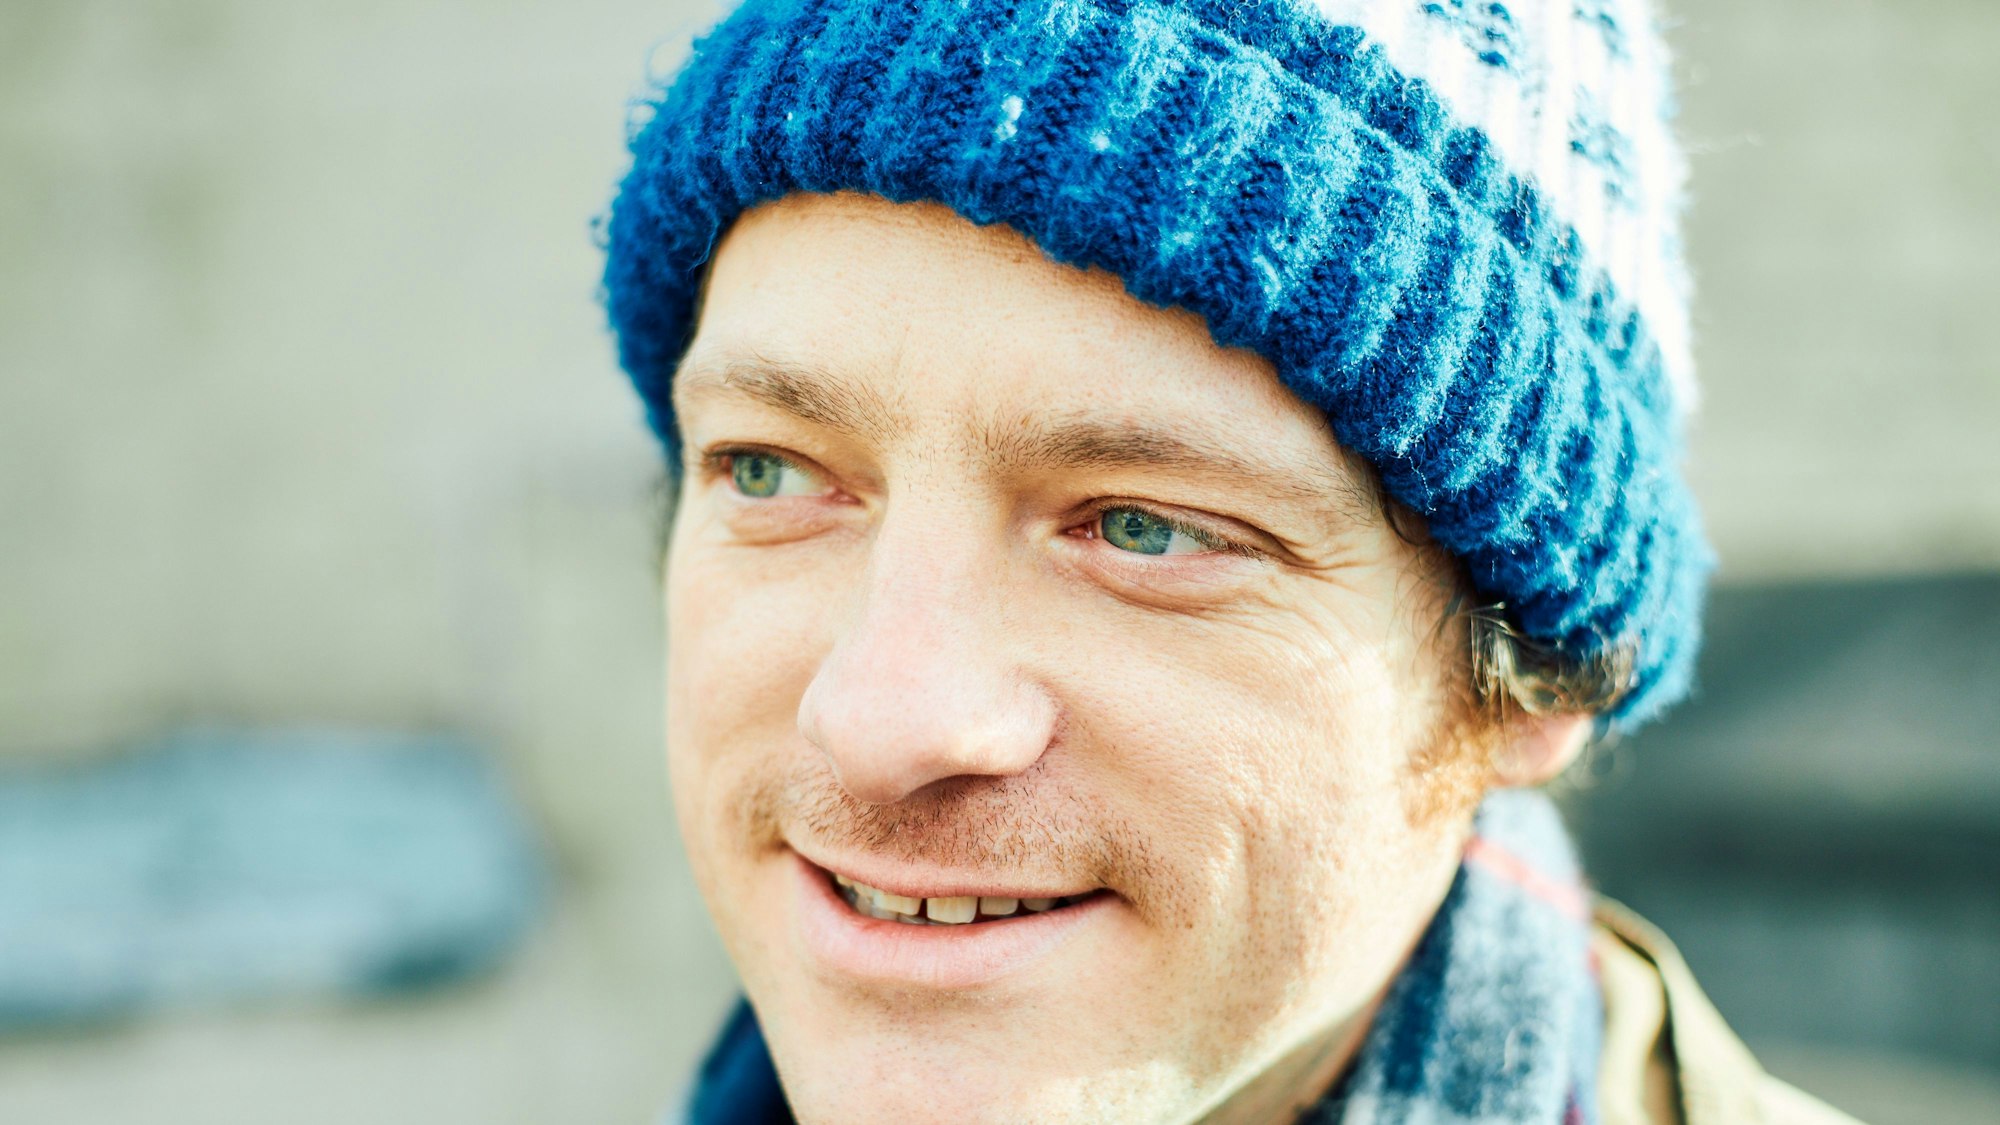 Kurt Tallert trägt eine blaue Mütze und lächelt